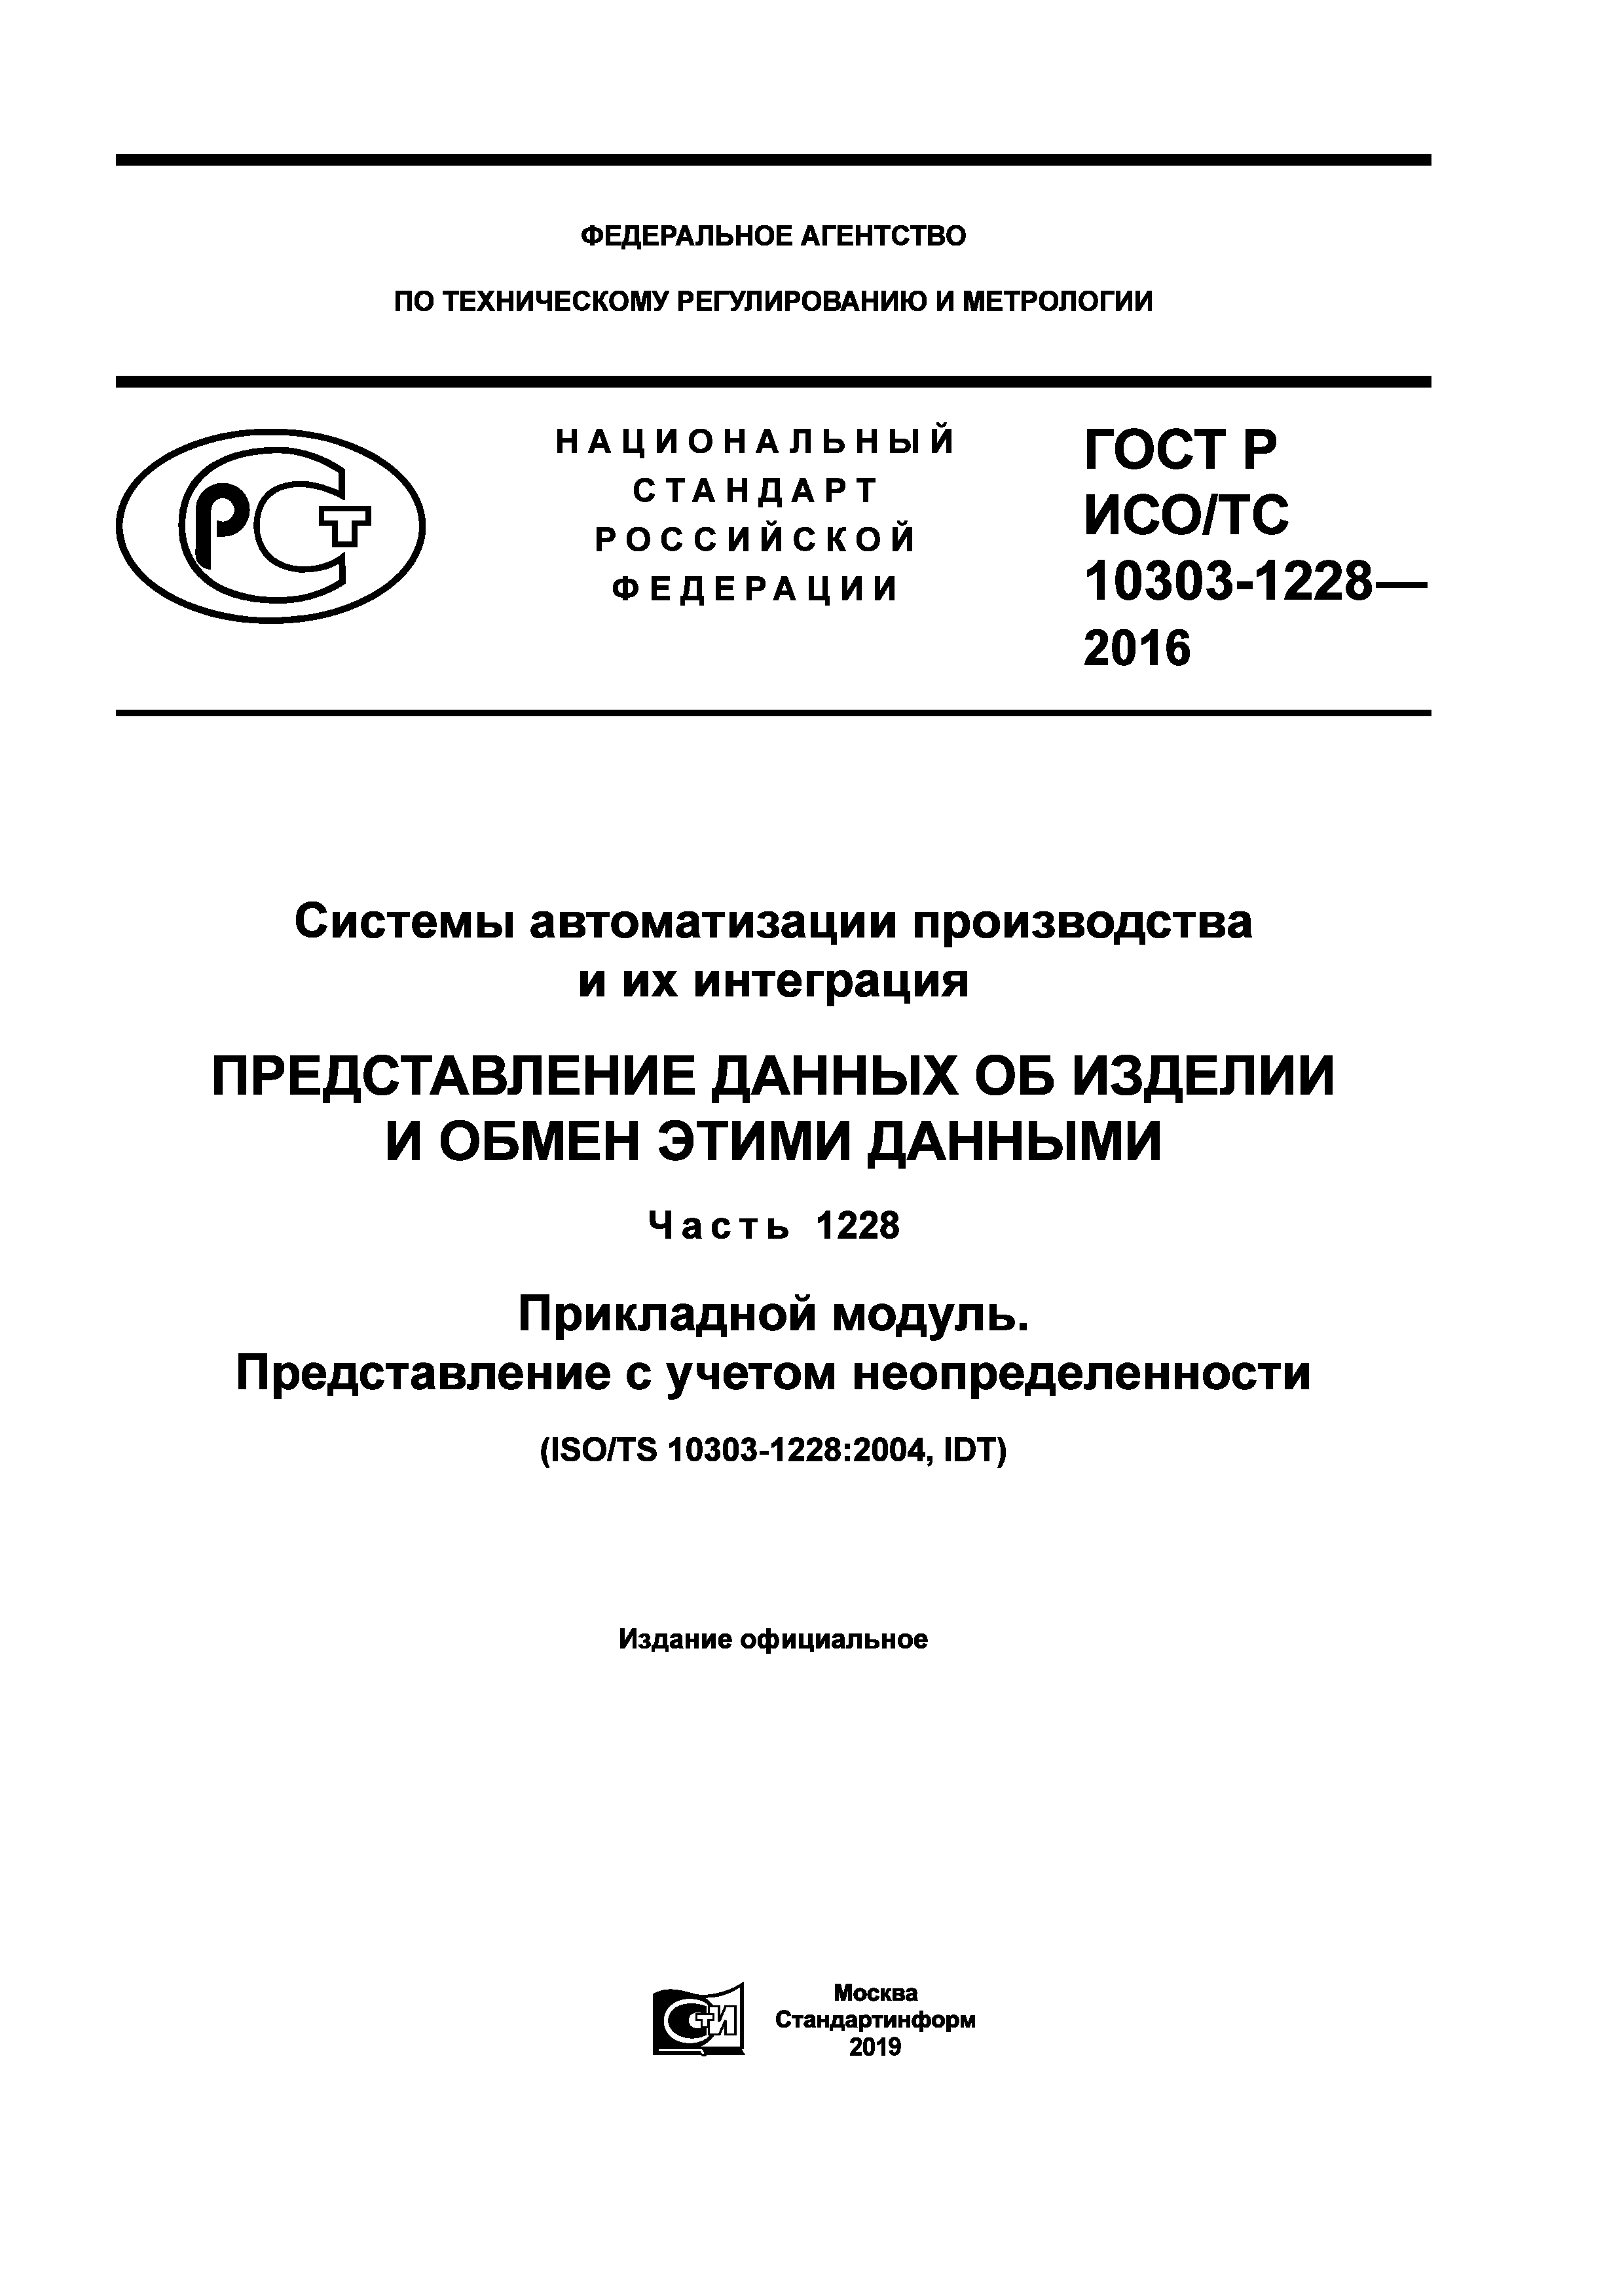 ГОСТ Р ИСО/ТС 10303-1228-2016